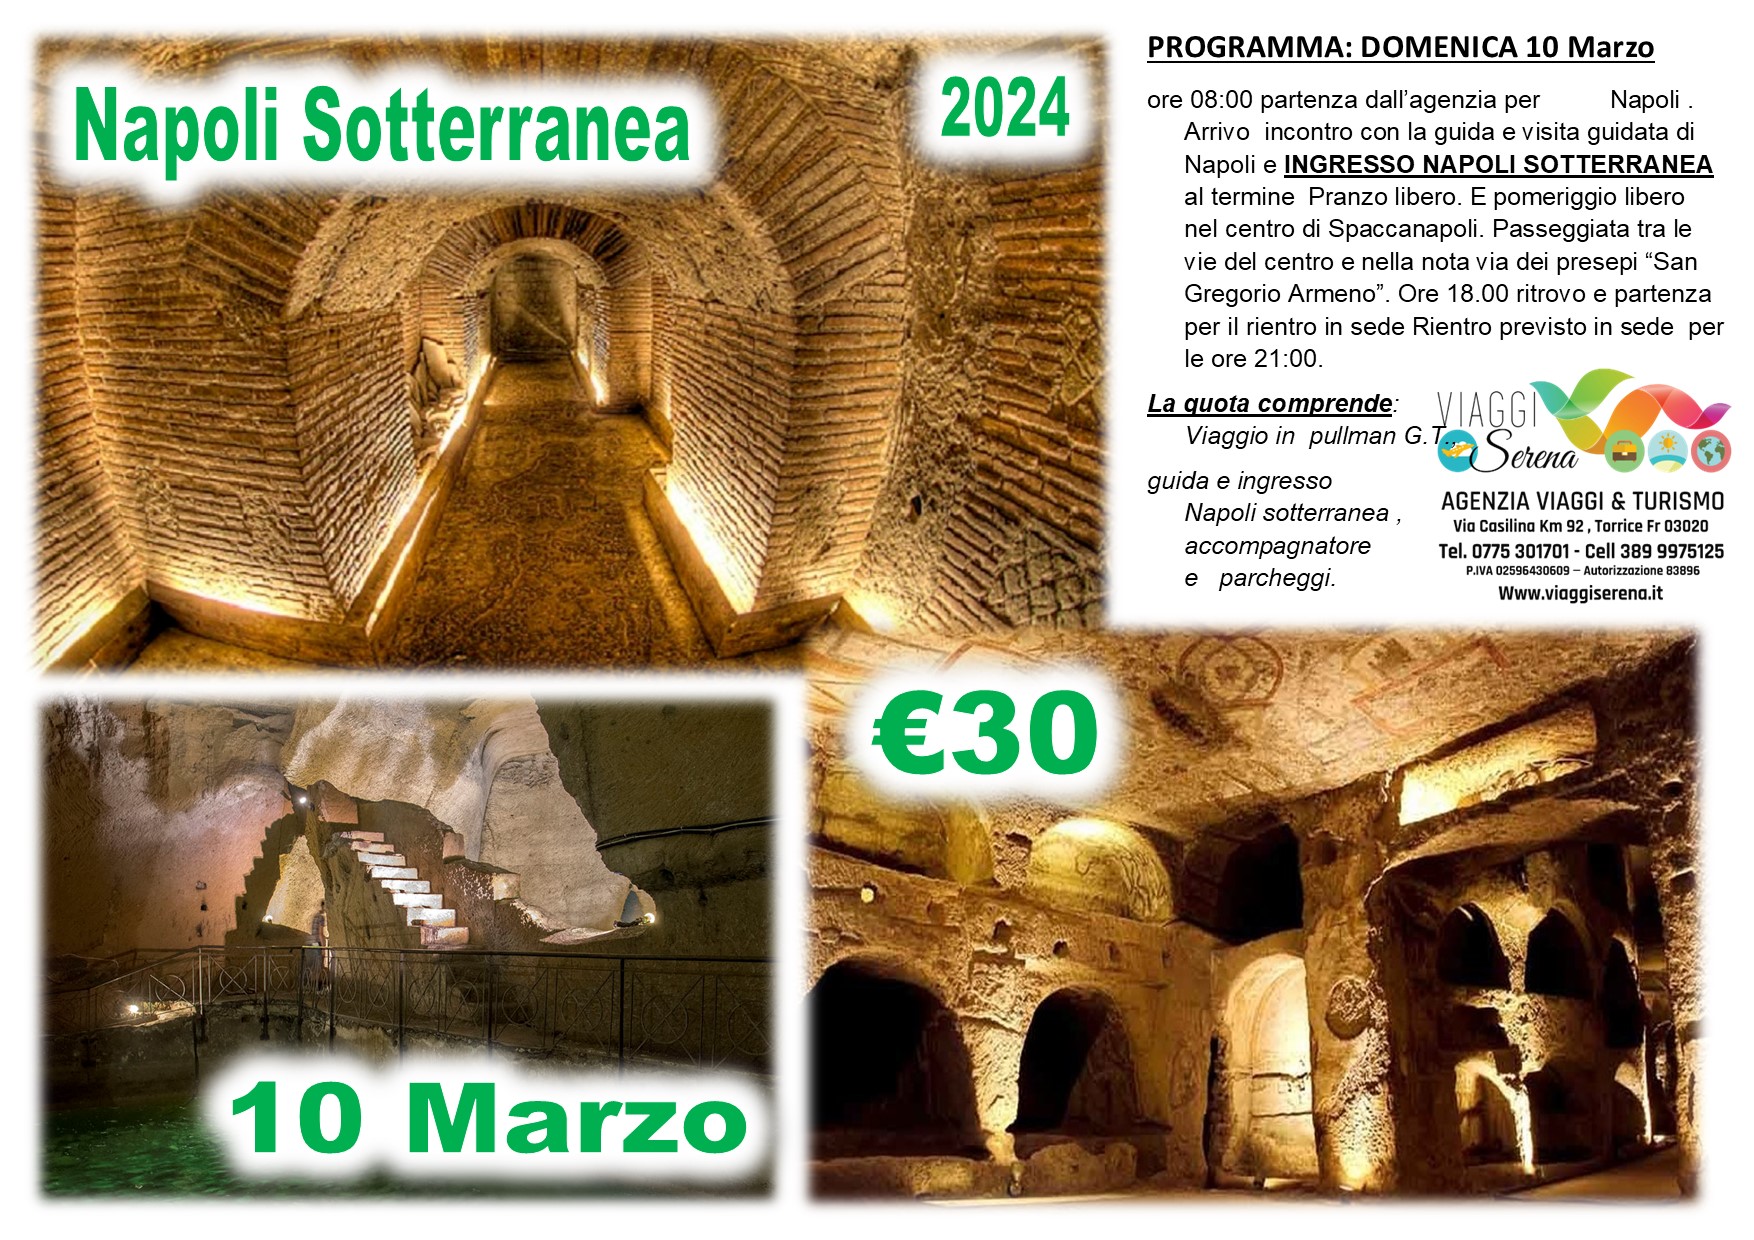 Viaggi di gruppo: Napoli Sotterranea & Spaccanapoli 10 Marzo € 30